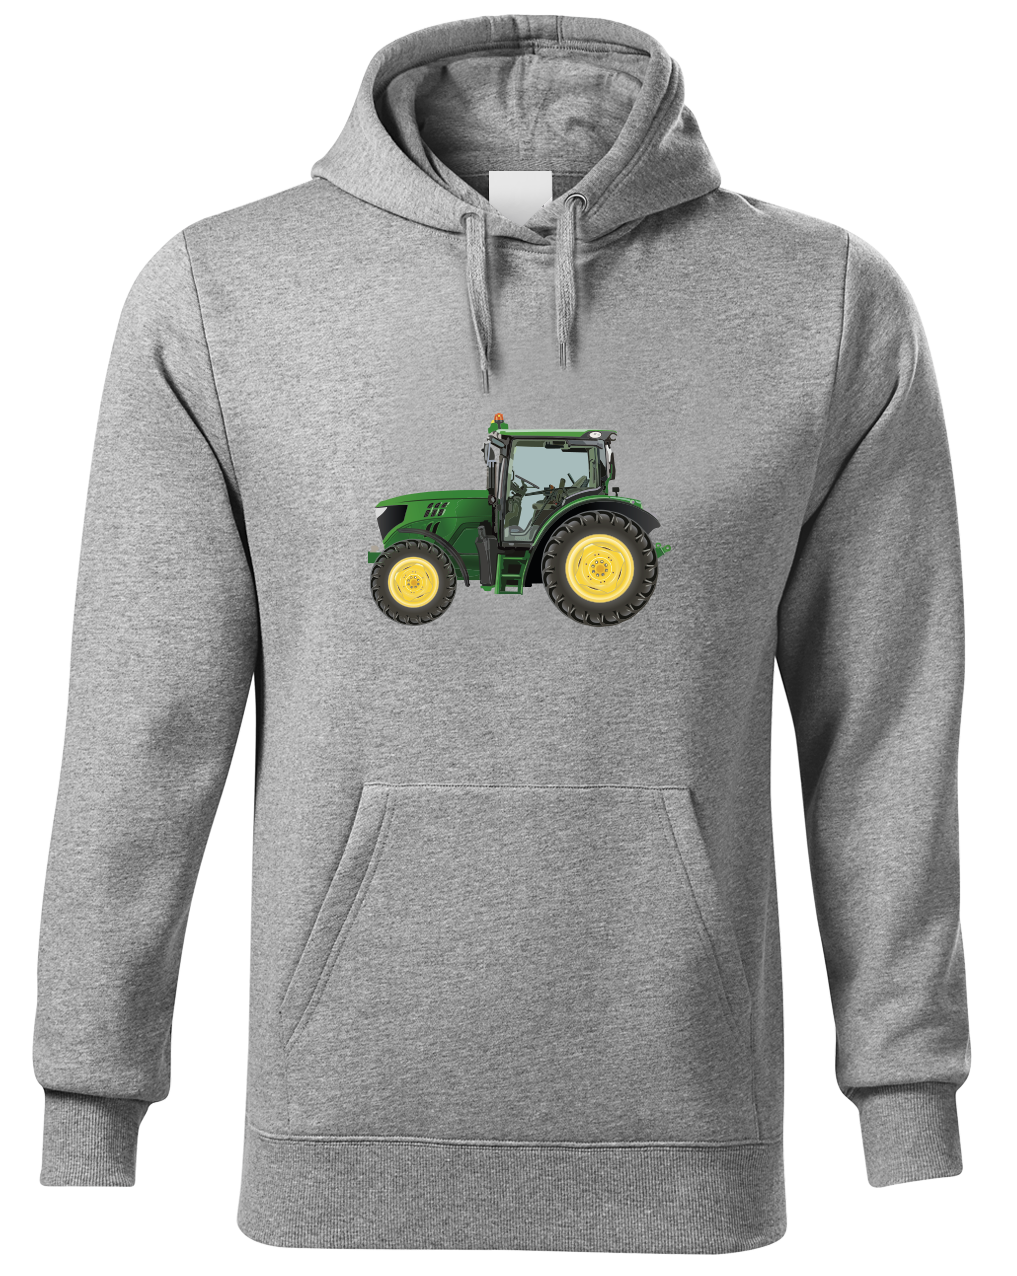 Mikina s traktorem - Zelený traktor Velikost: S, Barva: Světle šedá